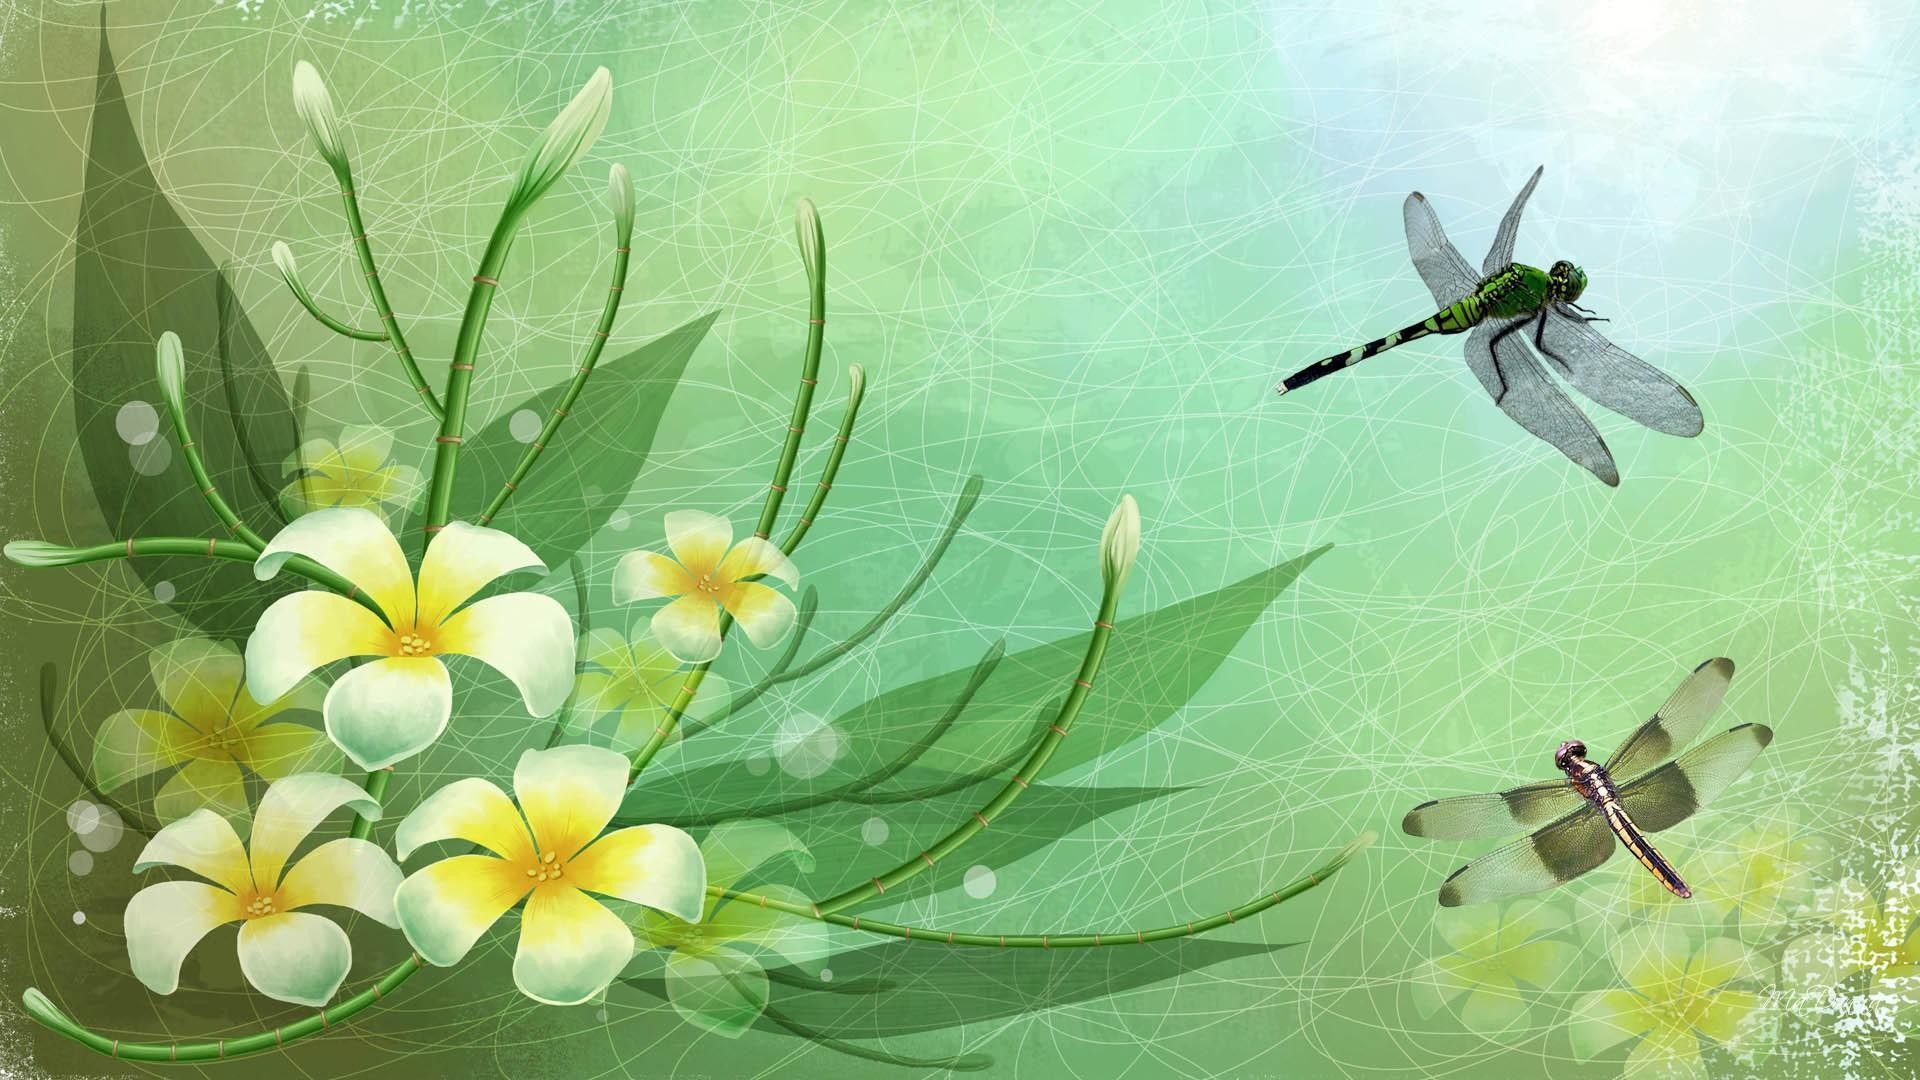 Dragonflies Hd Desktop Wallpapers For Widescreen, High - Dragonfly  Backgrounds - 1920x1080 Wallpaper 